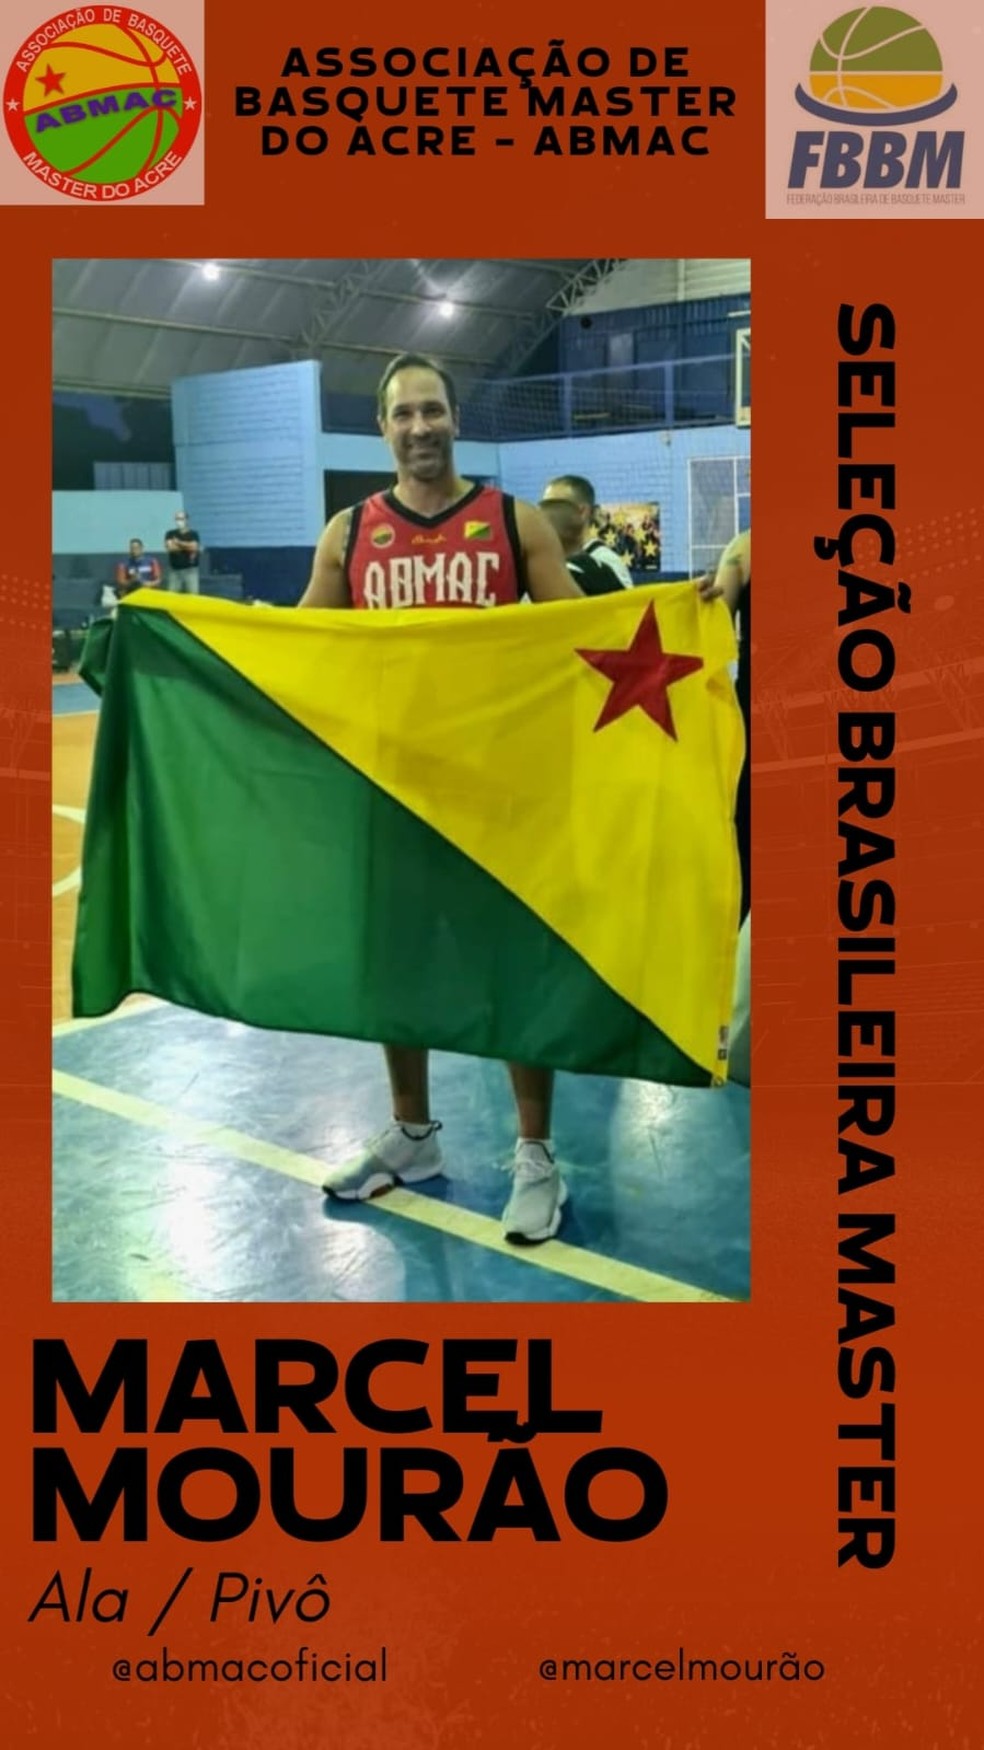 Marcel Mourão convocado para a Seleção Brasileira de Basquete Master — Foto: Divulgação/ABMAC